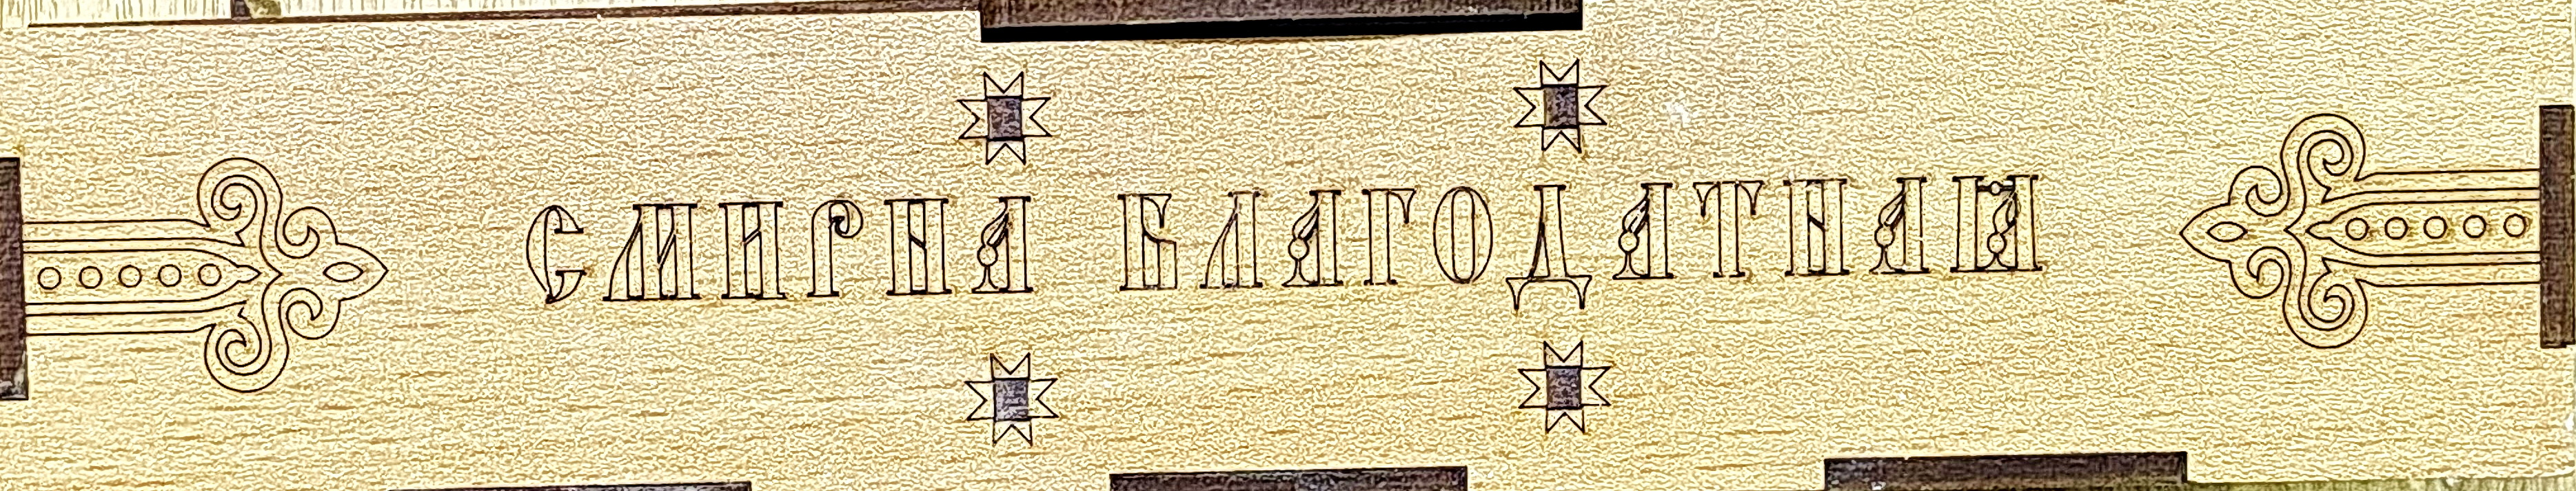 Смирна Благодатная, Дары Мелхиседека 660 г, в деревянном коробе